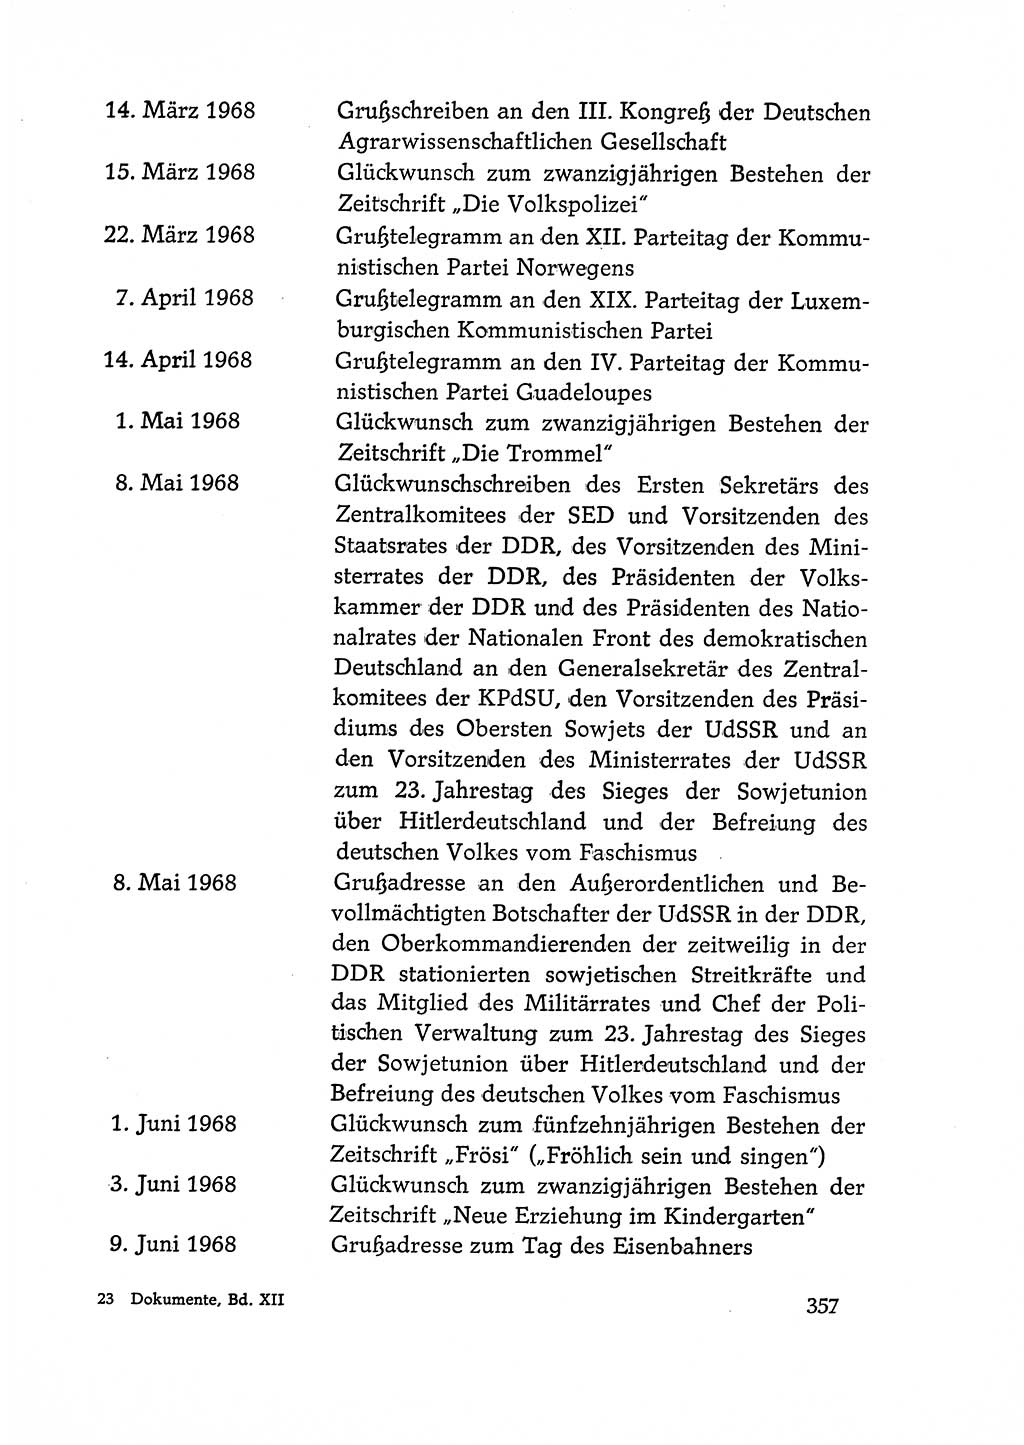 Dokumente der Sozialistischen Einheitspartei Deutschlands (SED) [Deutsche Demokratische Republik (DDR)] 1968-1969, Seite 357 (Dok. SED DDR 1968-1969, S. 357)